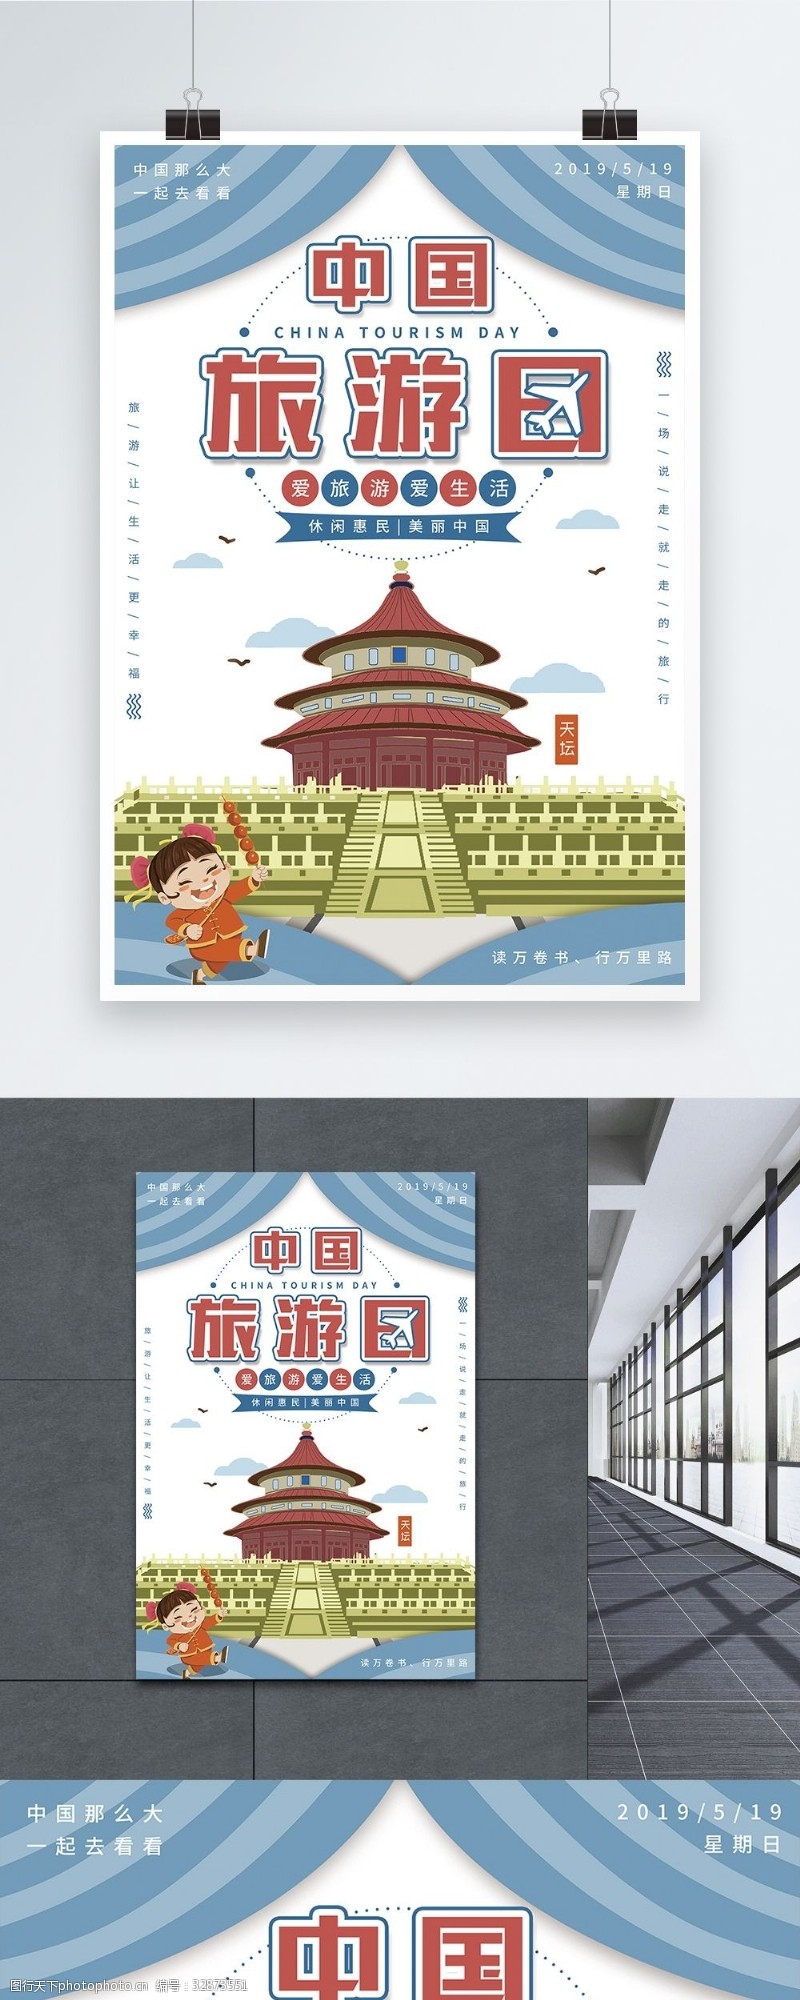 美团中国旅游日宣传海报